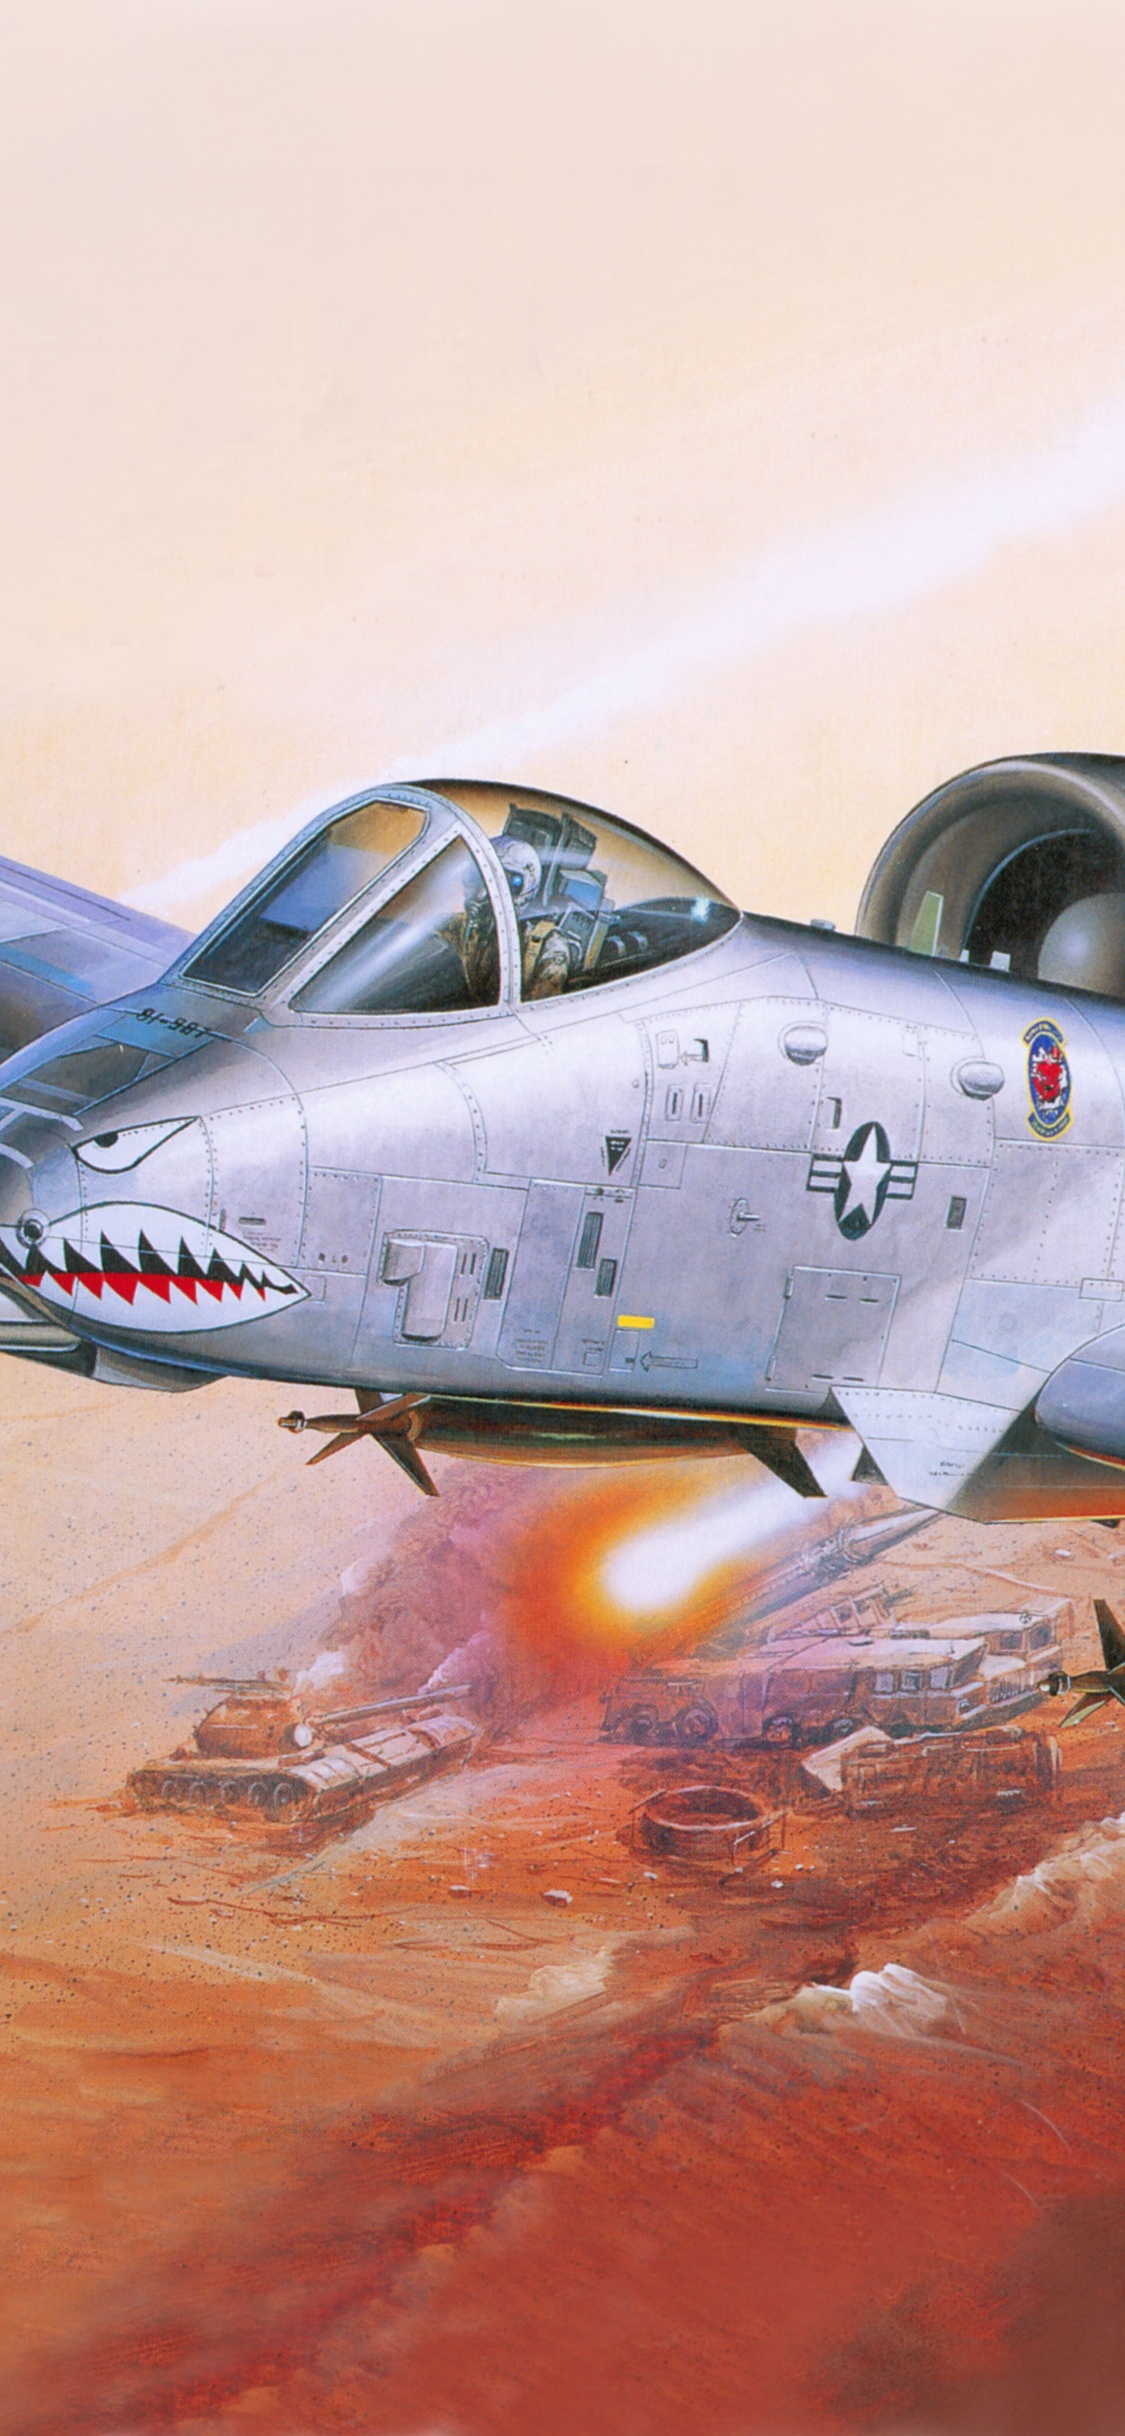 塑料模型, 航空, 喷气式飞机, 军用飞机, 空军 壁纸 1125x2436 允许